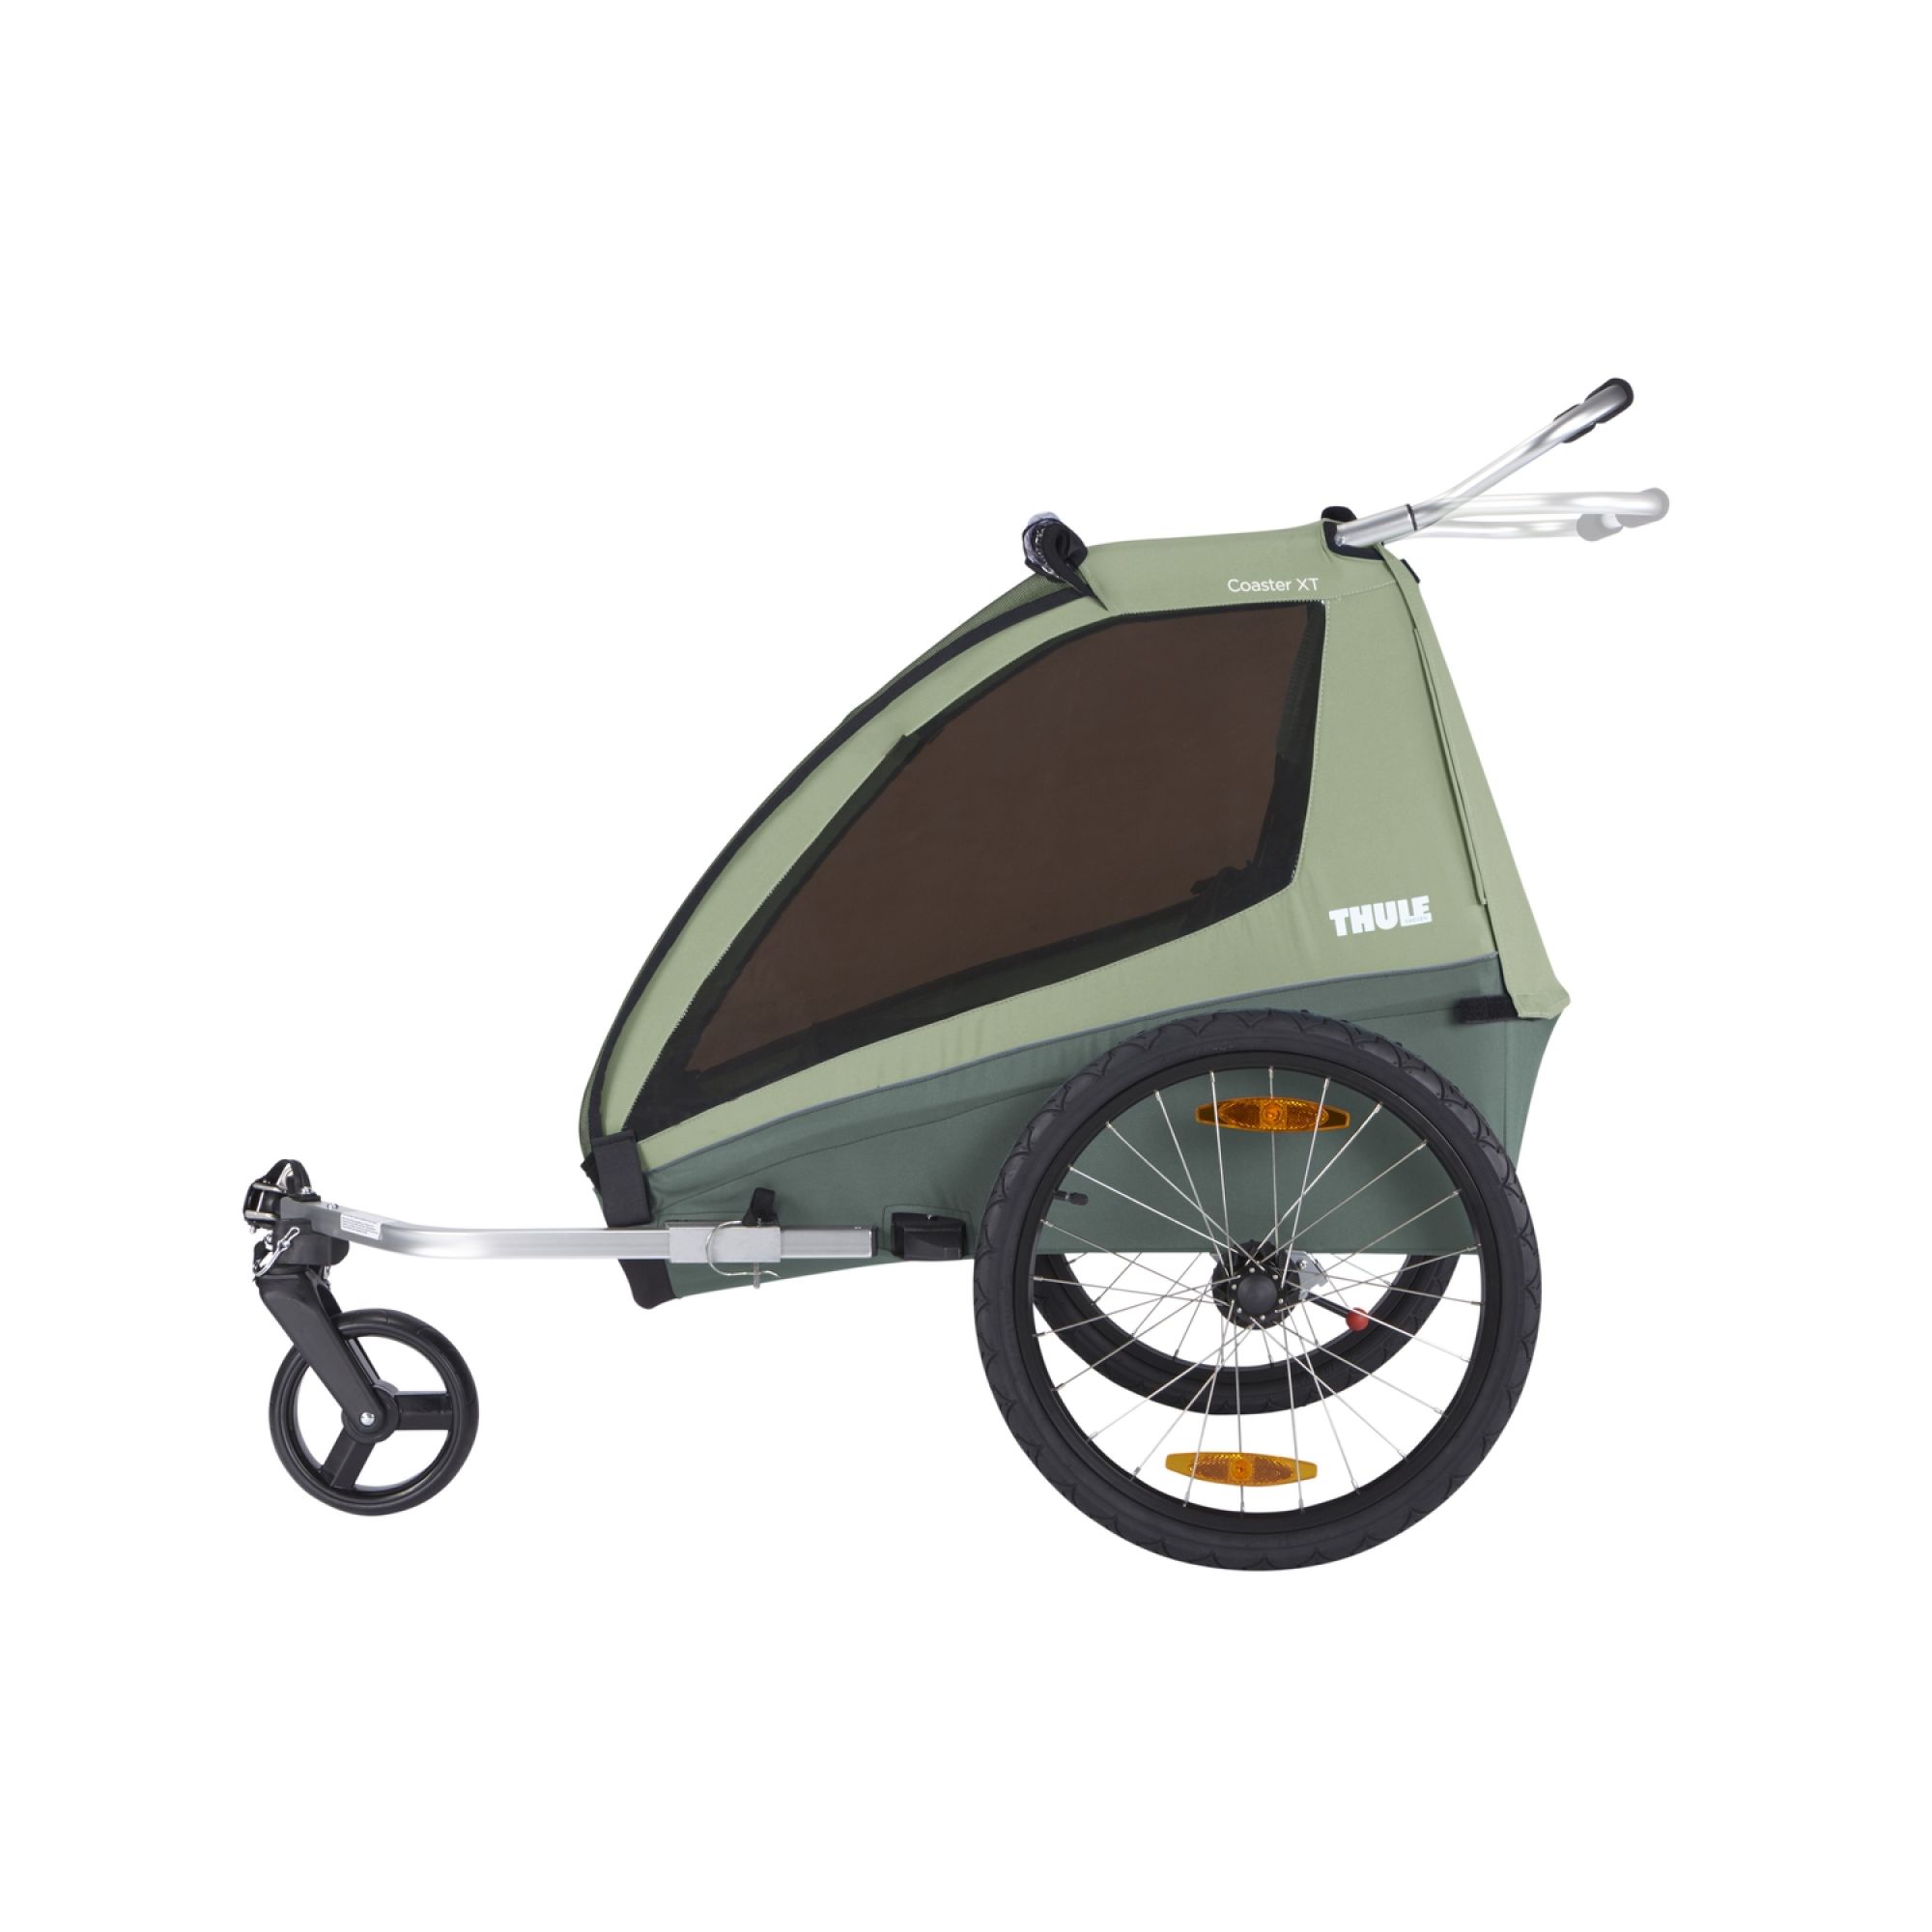 Remorque pour vélo Coaster 2 XT Mallard Green - Made in Bébé